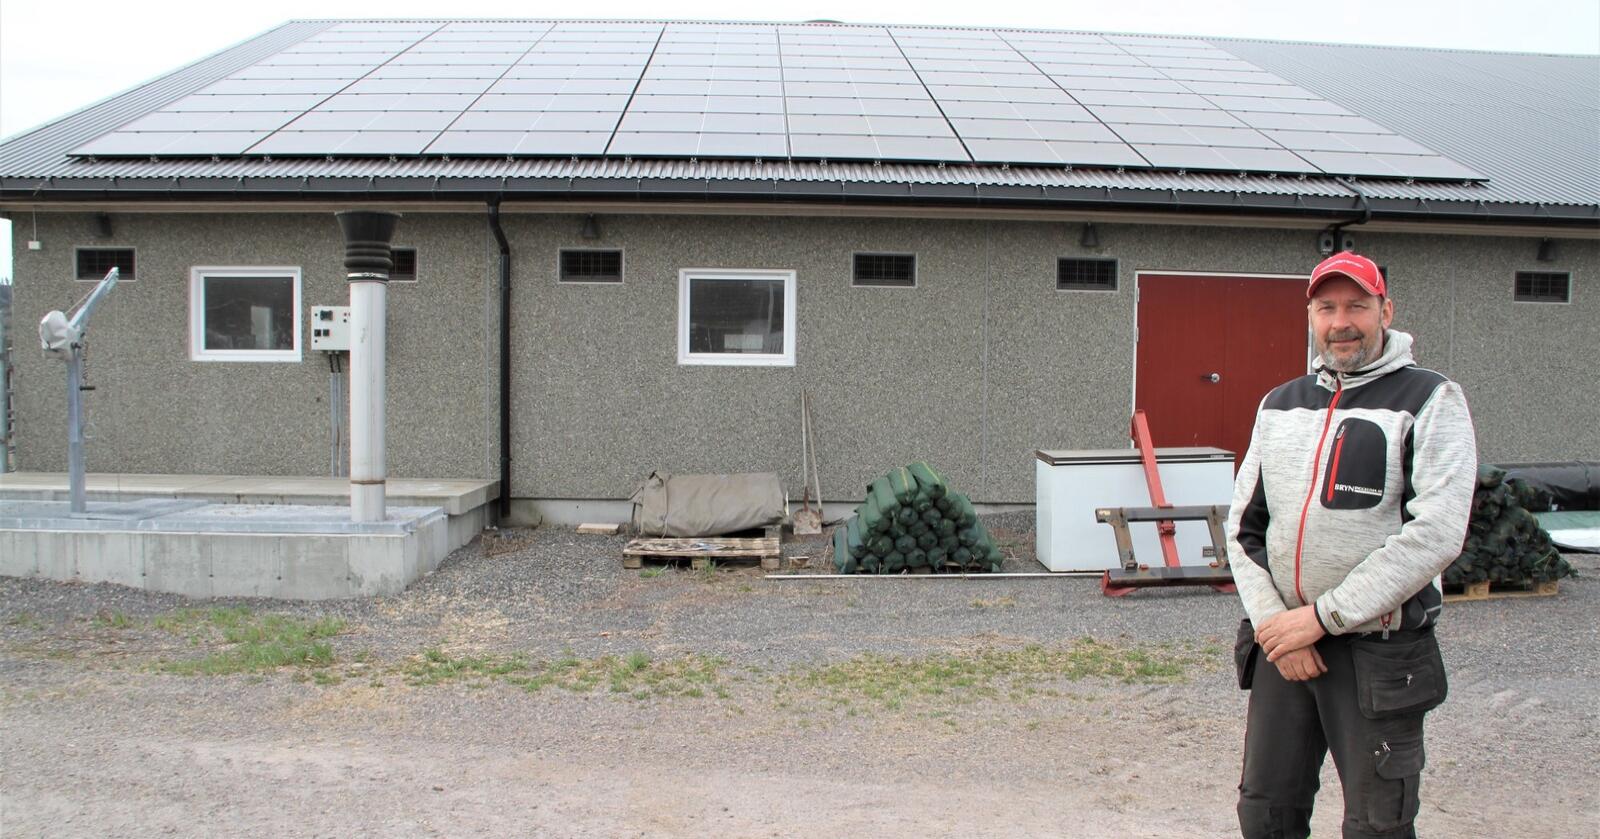 GOD INVESTERING: Espen Finden får dekket en tredel av energiforbruket her på Løken gård ved hjelp av solcellene. Kun halvparten av solcellepanelene er synlige på bildet. Den andre halvparten ligger på den andre siden av taket. Foto: Lars Ivar Hordnes